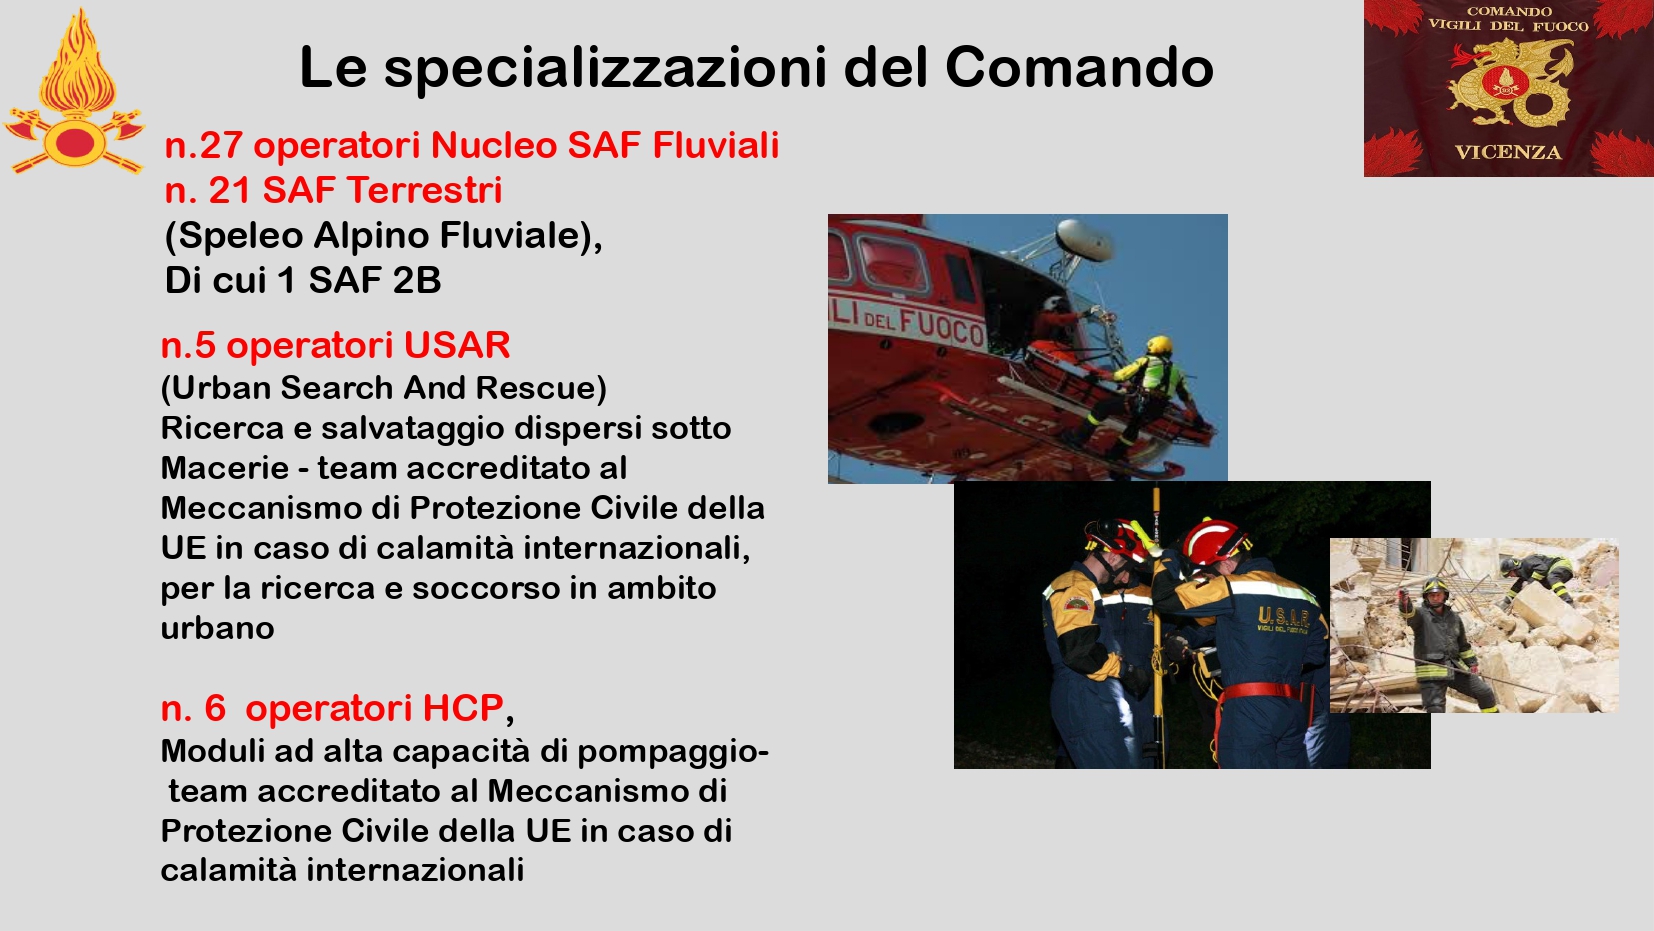 Presentazione_ Comando Vicenza_page-0013